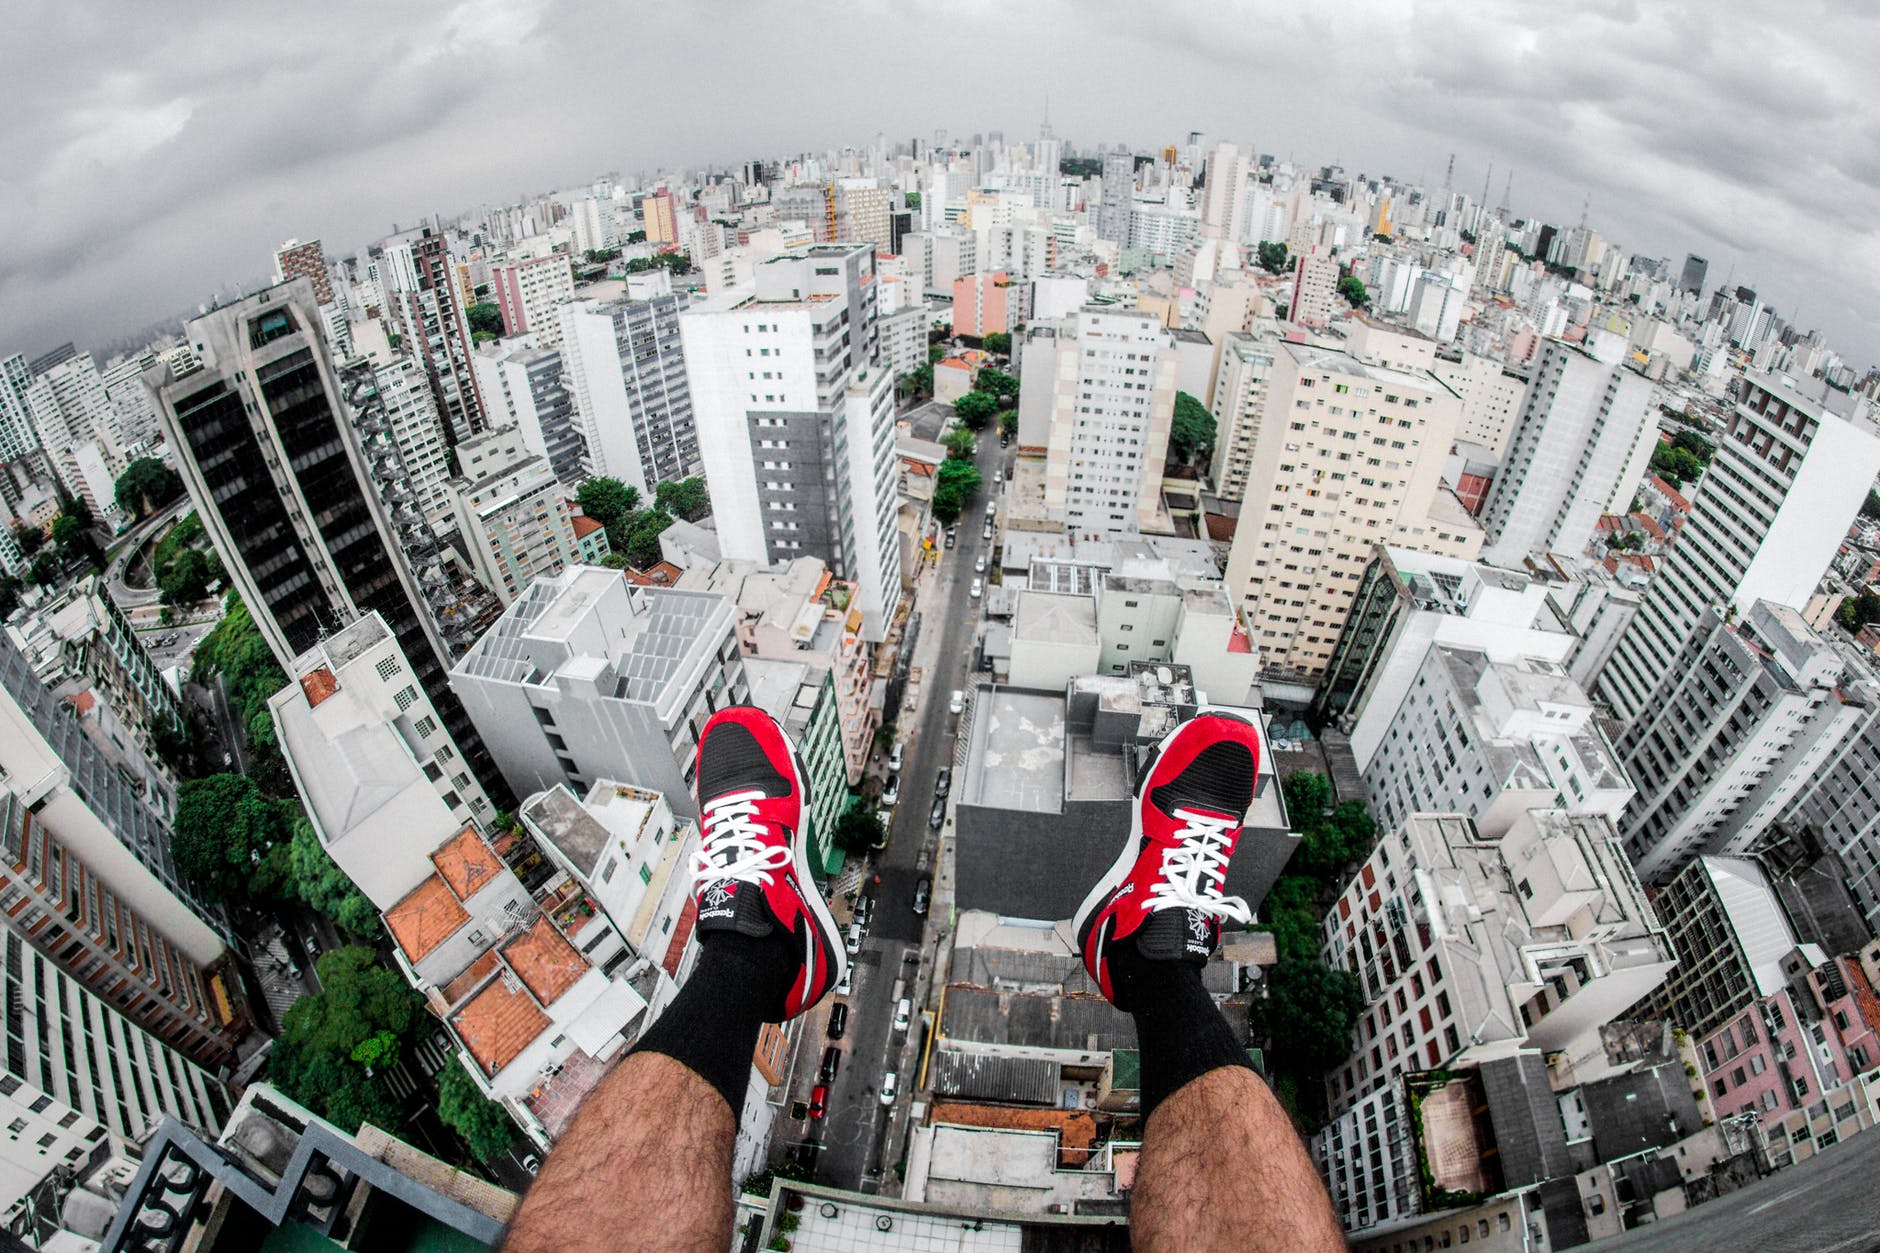 Imágen de una persona mirando la ciudad desde un edificio alto